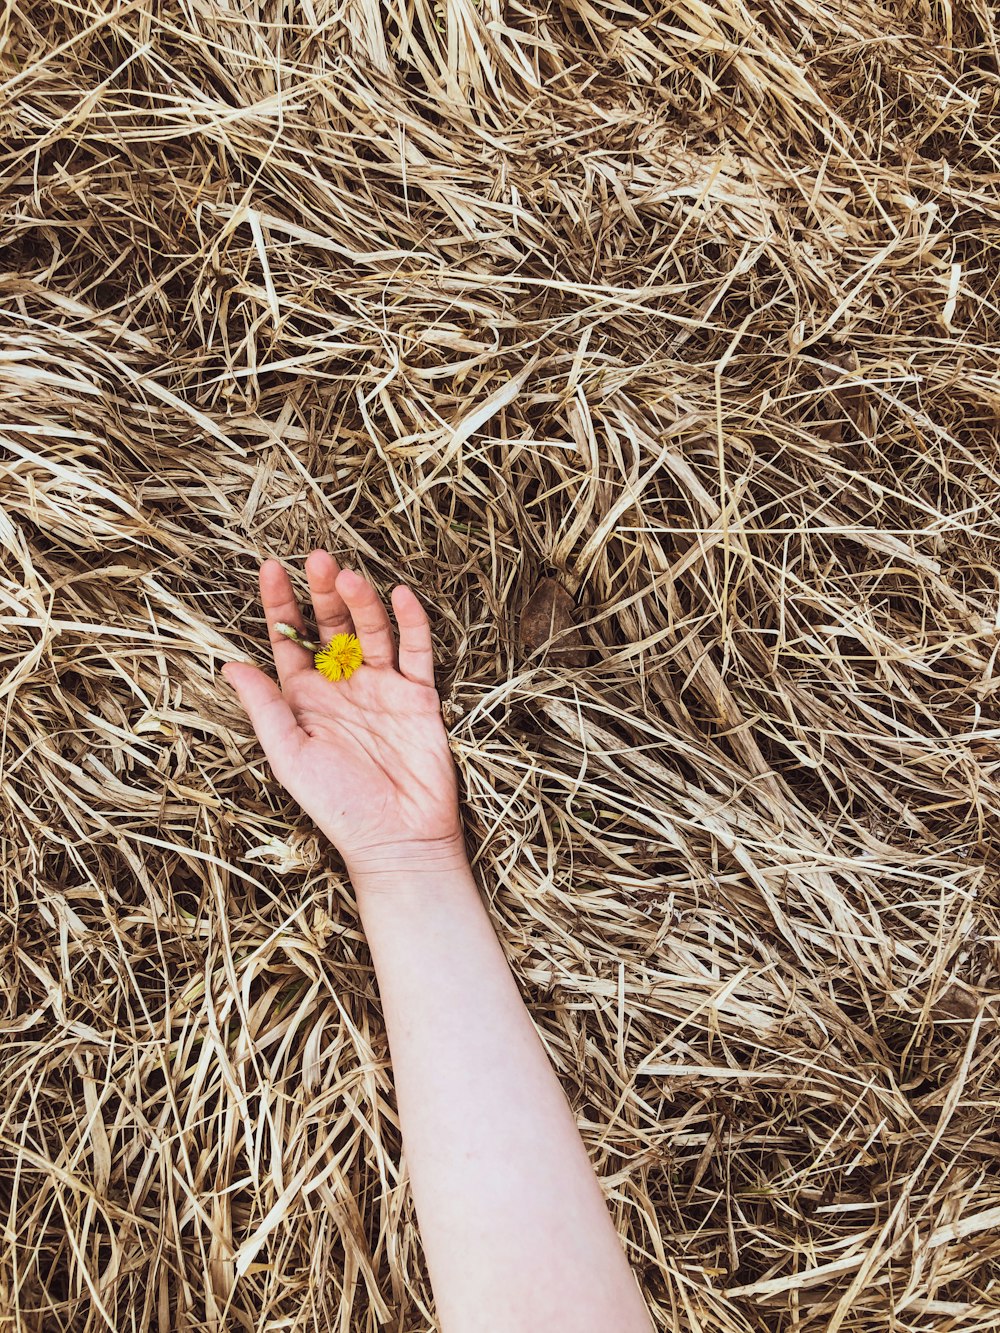 persona sosteniendo una flor amarilla sobre hierba seca marrón